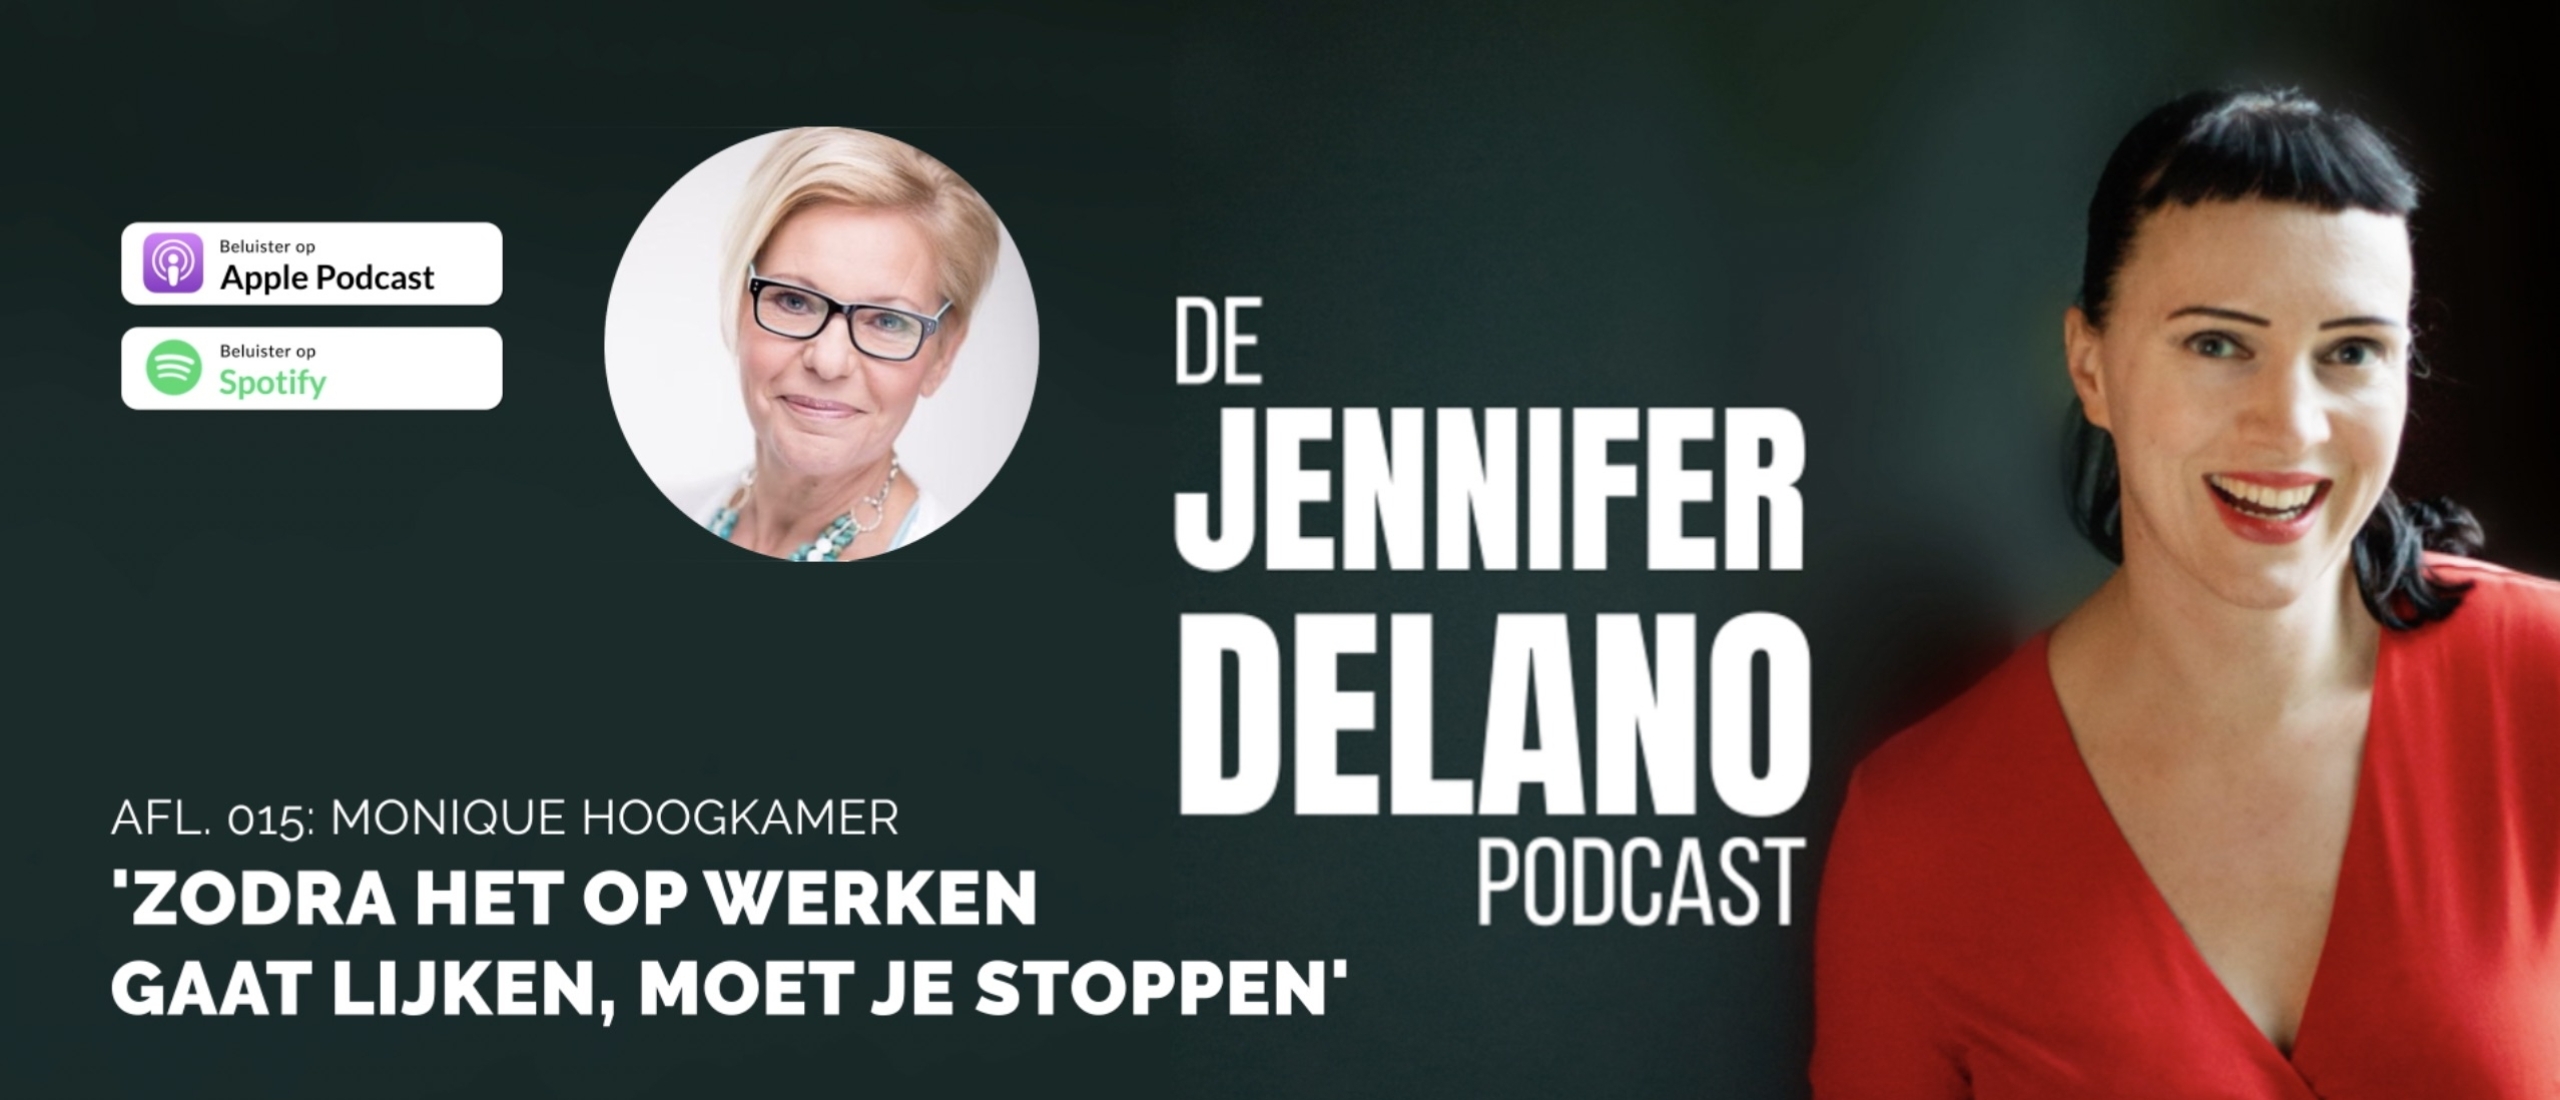 'Zodra het op werken gaat lijken, moet je stoppen' - De Jennifer Delano Podcast Afl. 015 met Monique Hoogkamer